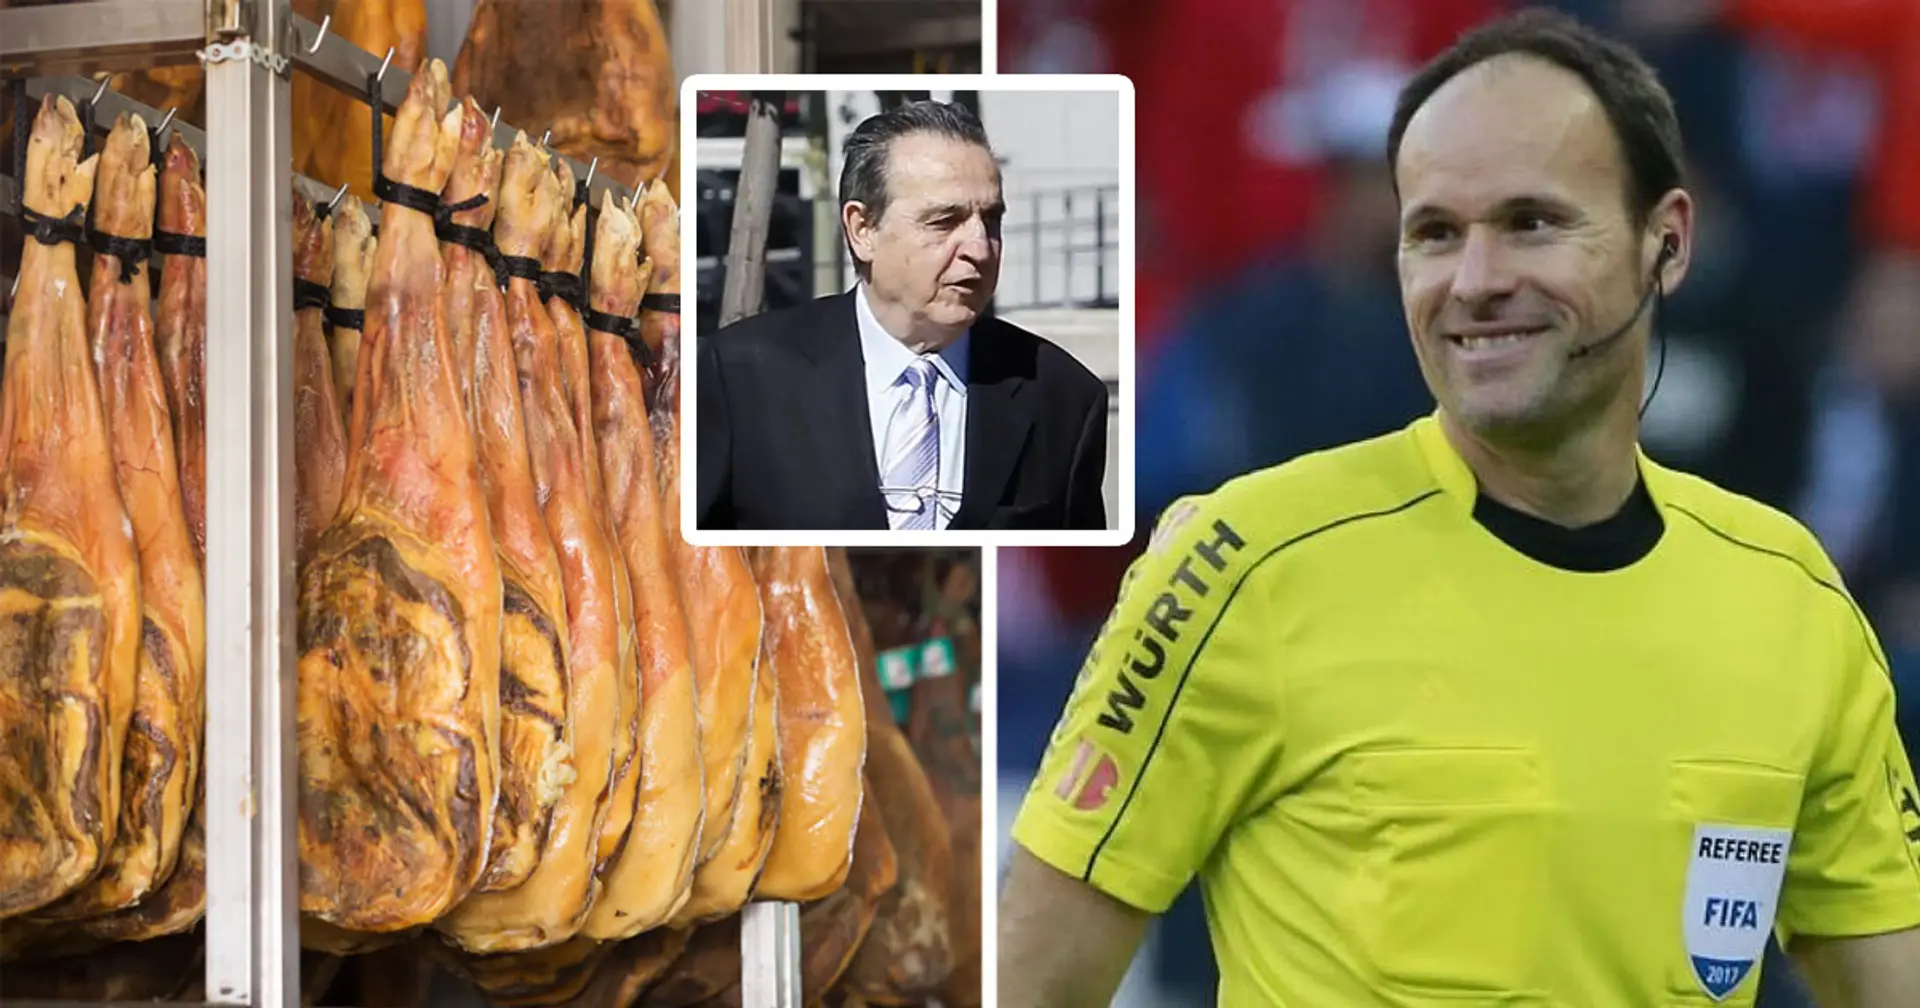 Jamón, tostadoras y más 'regalos de lujo' por valor de 10.000 €: lo que aparentemente usó el Barça para sobornar a los árbitros